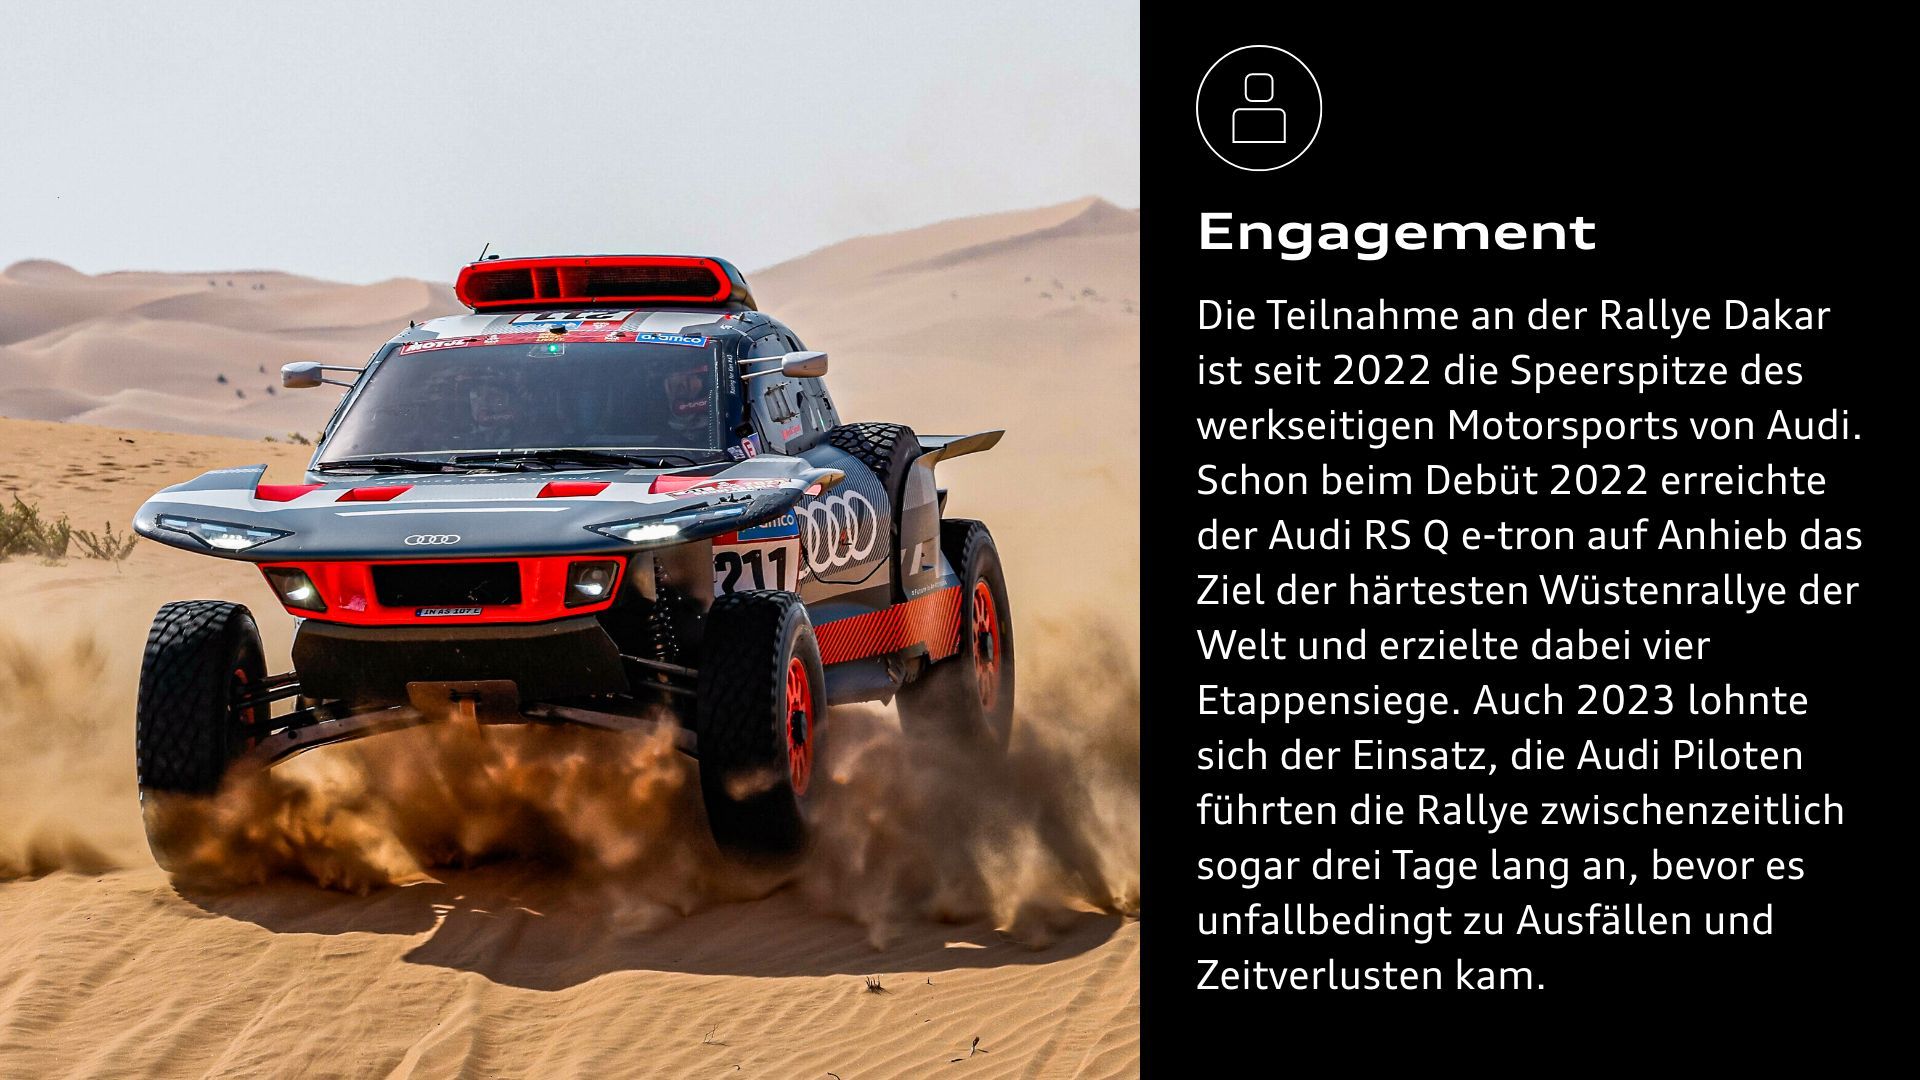 Engagement: Die Teilnahme an der Rallye Dakar ist seit 2022 die Speerspitze des werkseitigen Motorsports von Audi. Schon beim Debüt 2022 erreichte der Audi RS Q e-tron auf Anhieb das Ziel der härtesten Wüstenrallye der Welt und erzielte dabei vier Etappensiege. Auch 2023 lohnte sich der Einsatz, die Audi Piloten führten die Rallye zwischenzeitlich sogar drei Tage lang an, bevor es unfallbedingt zu Ausfällen und Zeitverlusten kam.  